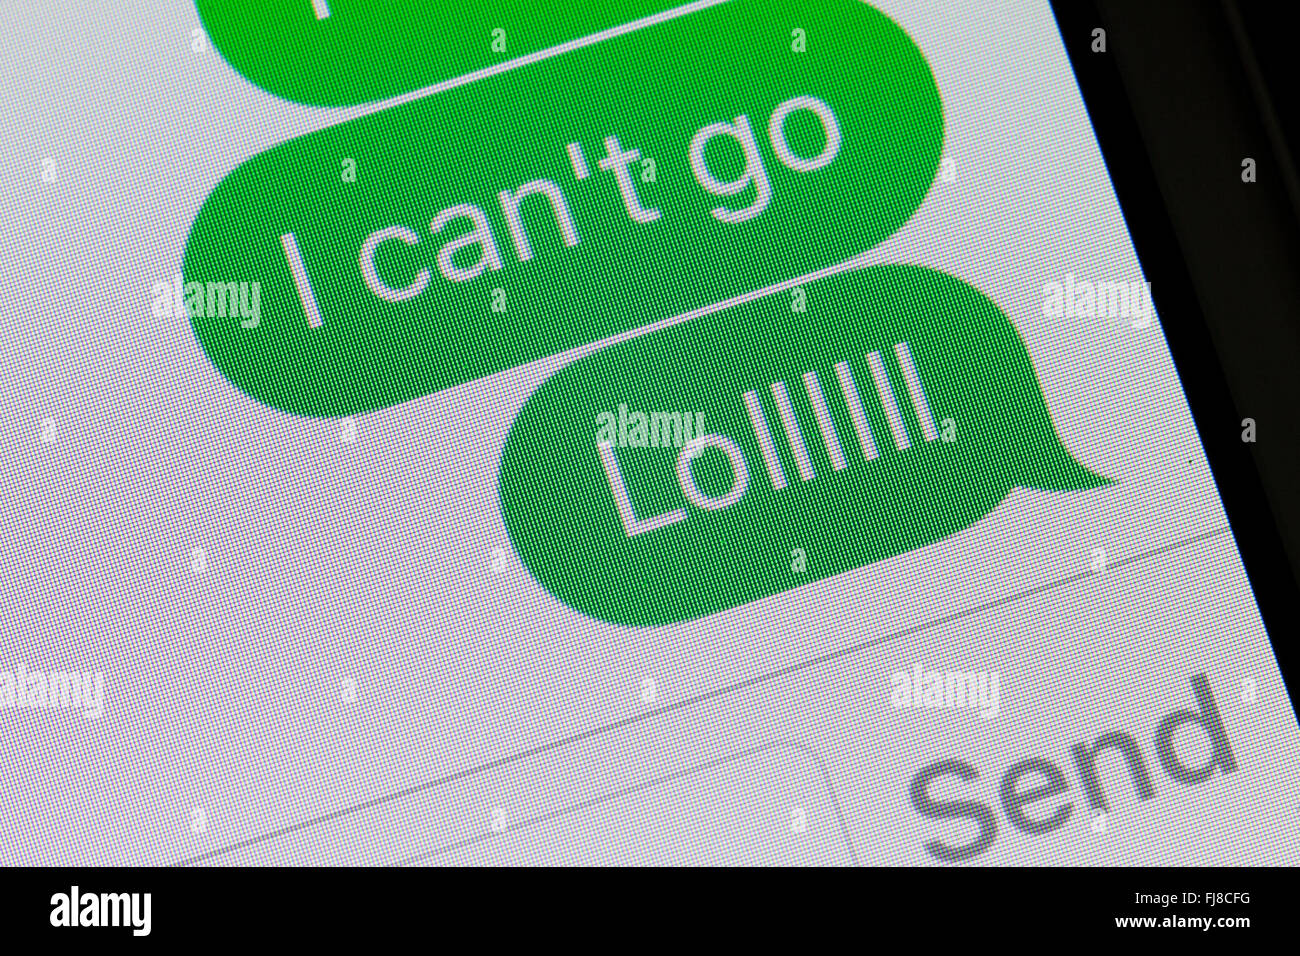 Un messaggio di testo visualizzati sullo schermo di iPhone (LOL messaggio di testo, comune texting slang) - USA Foto Stock